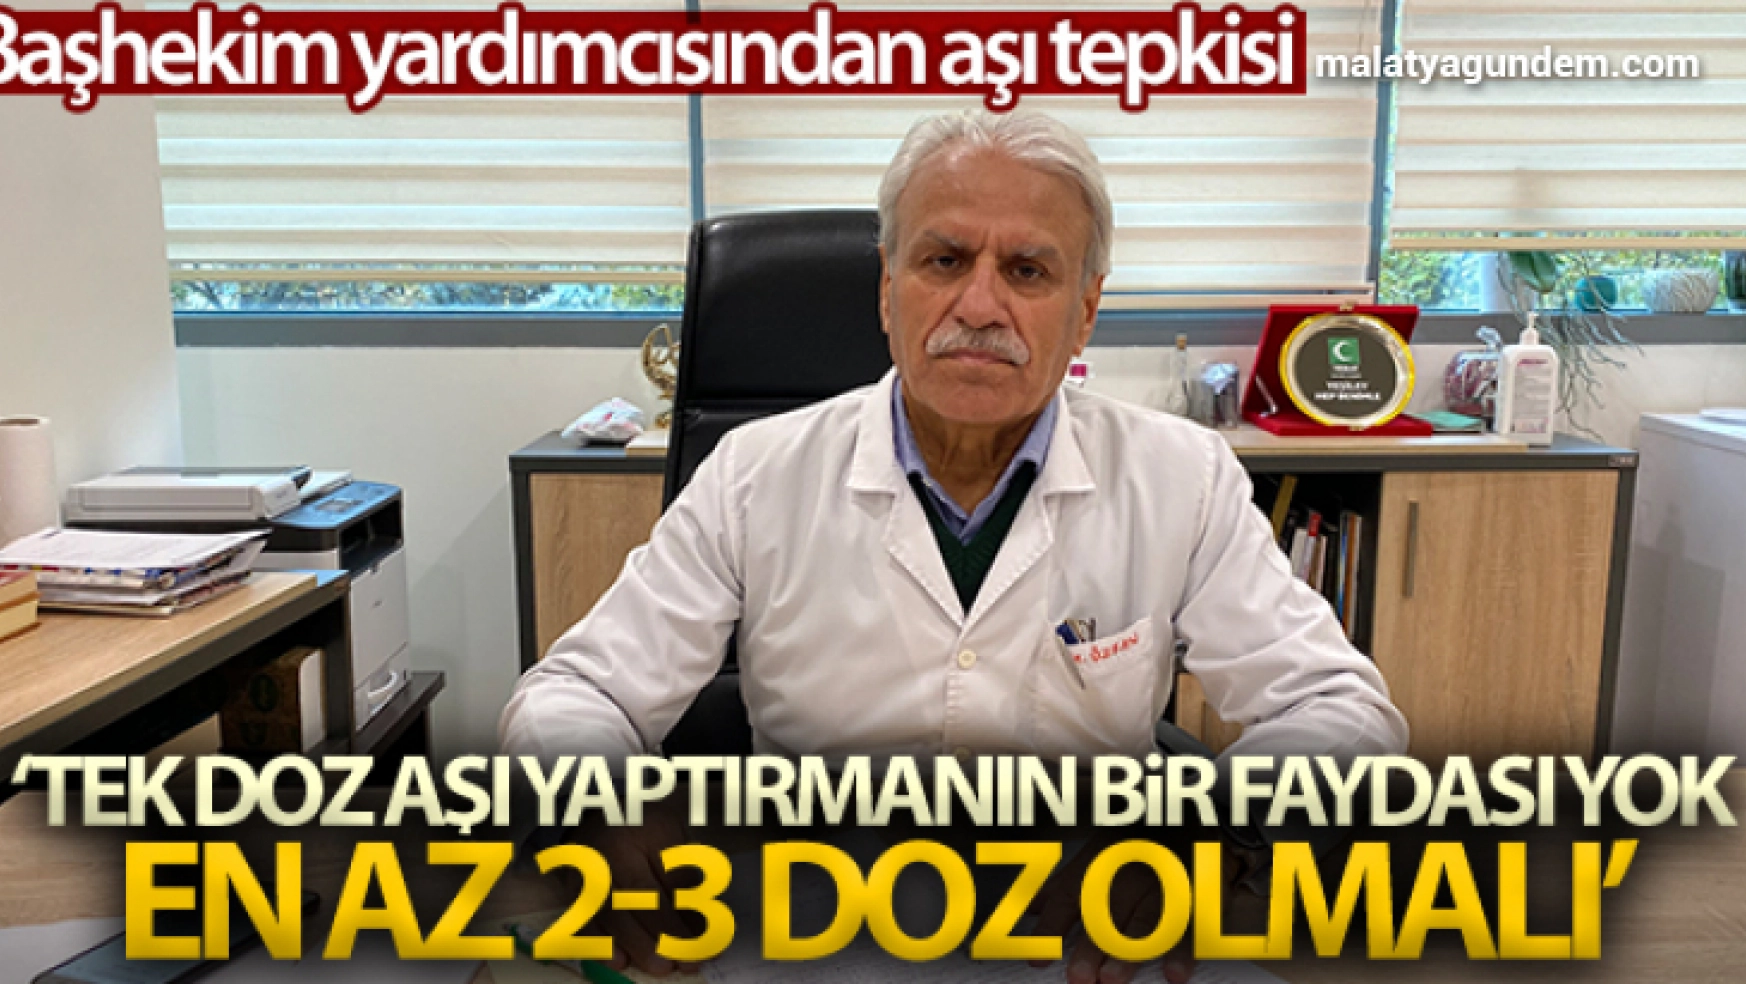 Prof. Dr. Cemil Taşcıoğlu Şehir Hastanesi'nde pandemi sürecinde 220 bini aşkın korona virüs aşısı yapıldı